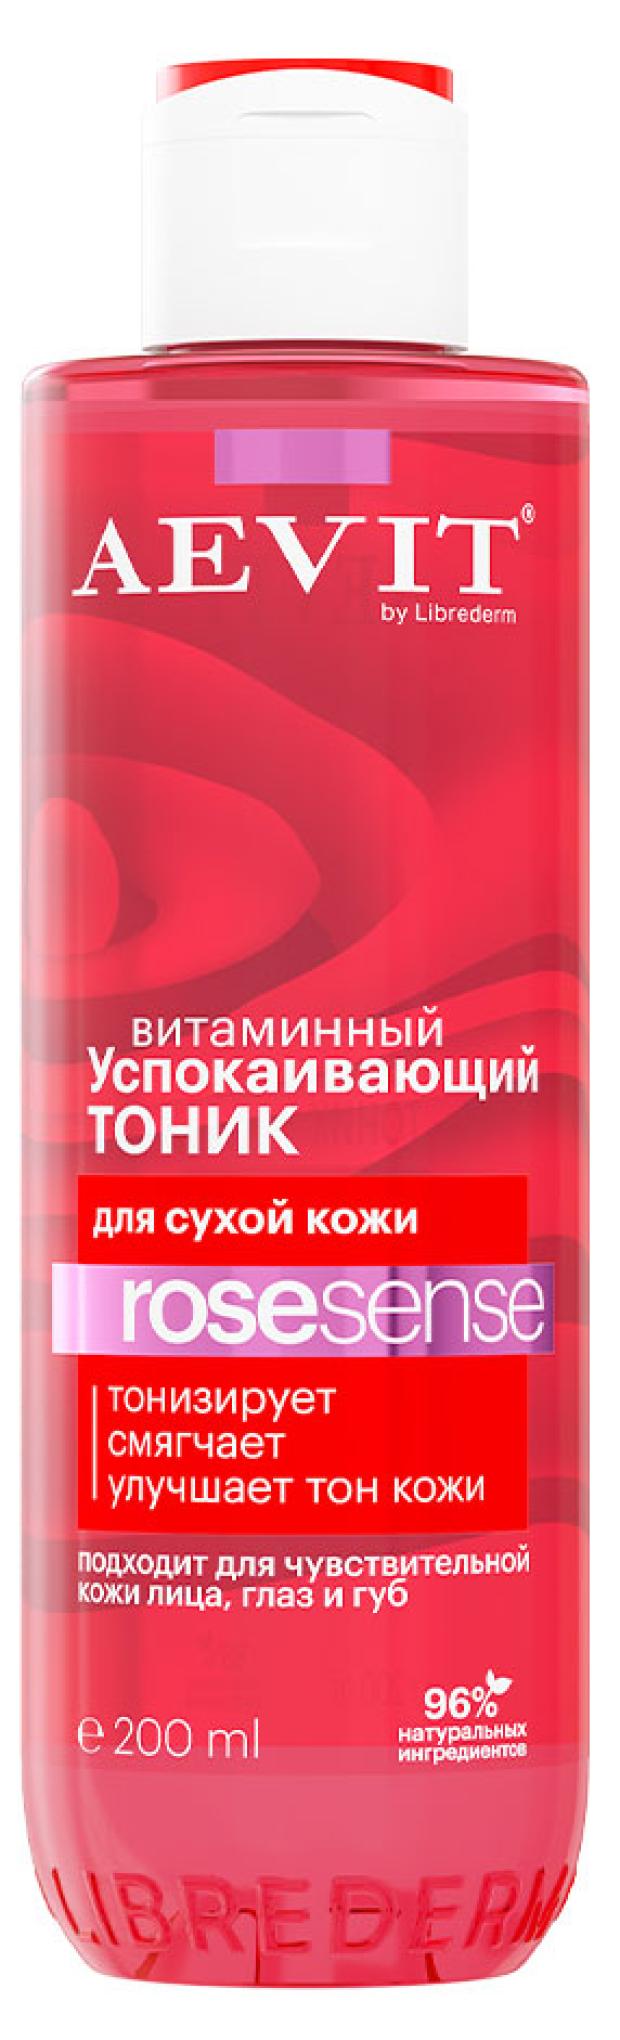 тоник для лица aevit by librederm rose sense успокаивающий витаминный